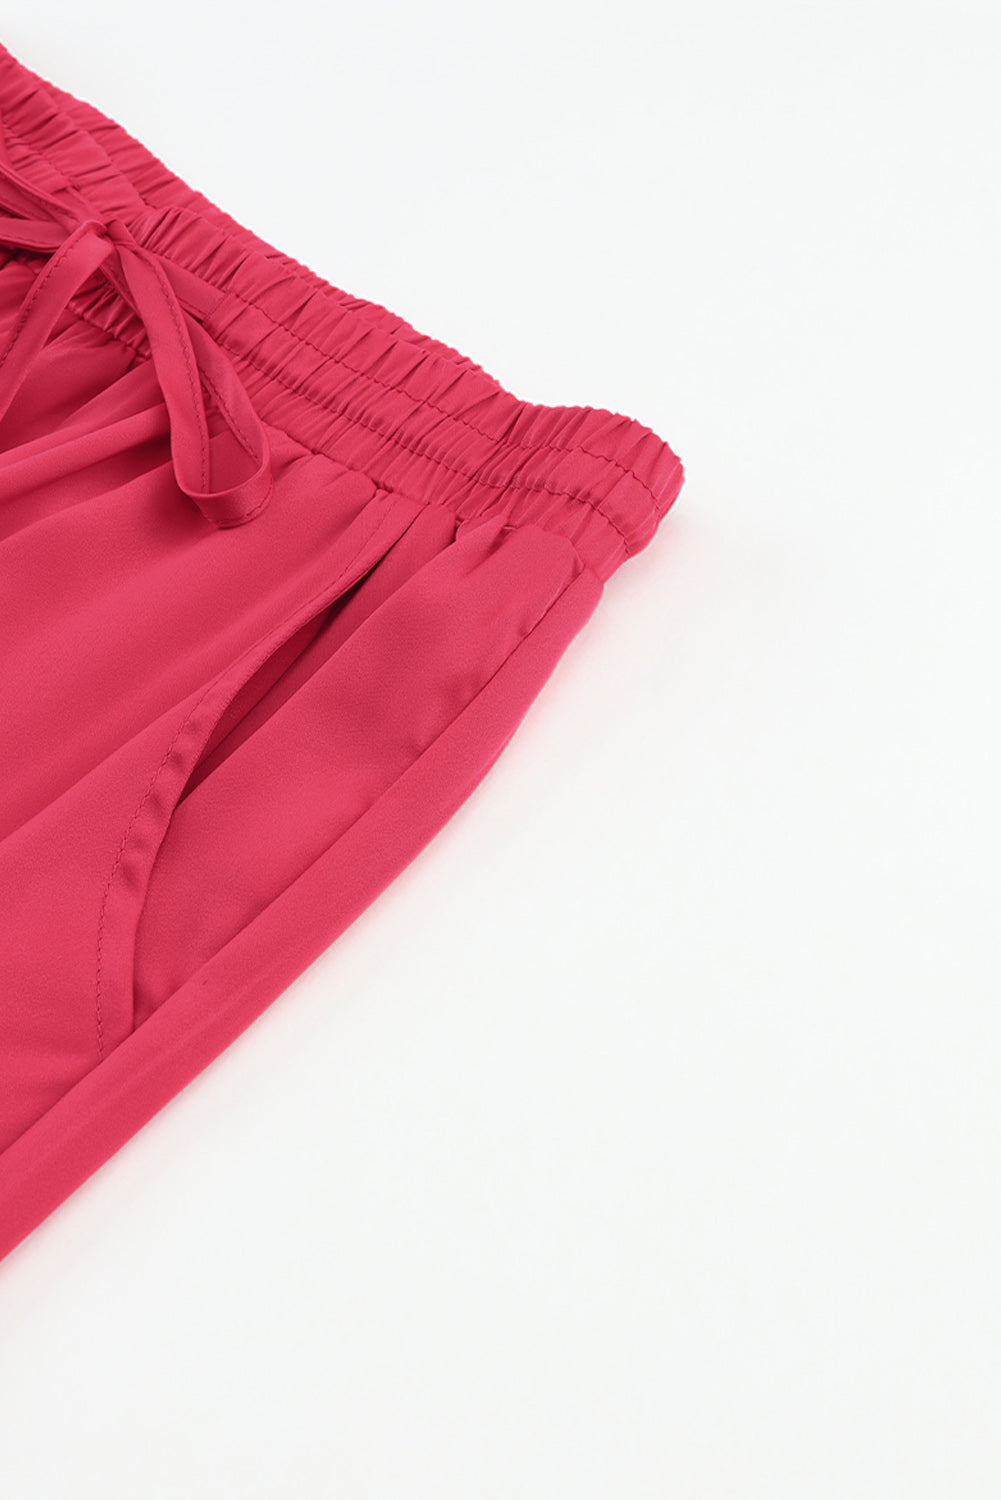 Pantaloni in vita elastica con coulisse e tasca in raso rosa